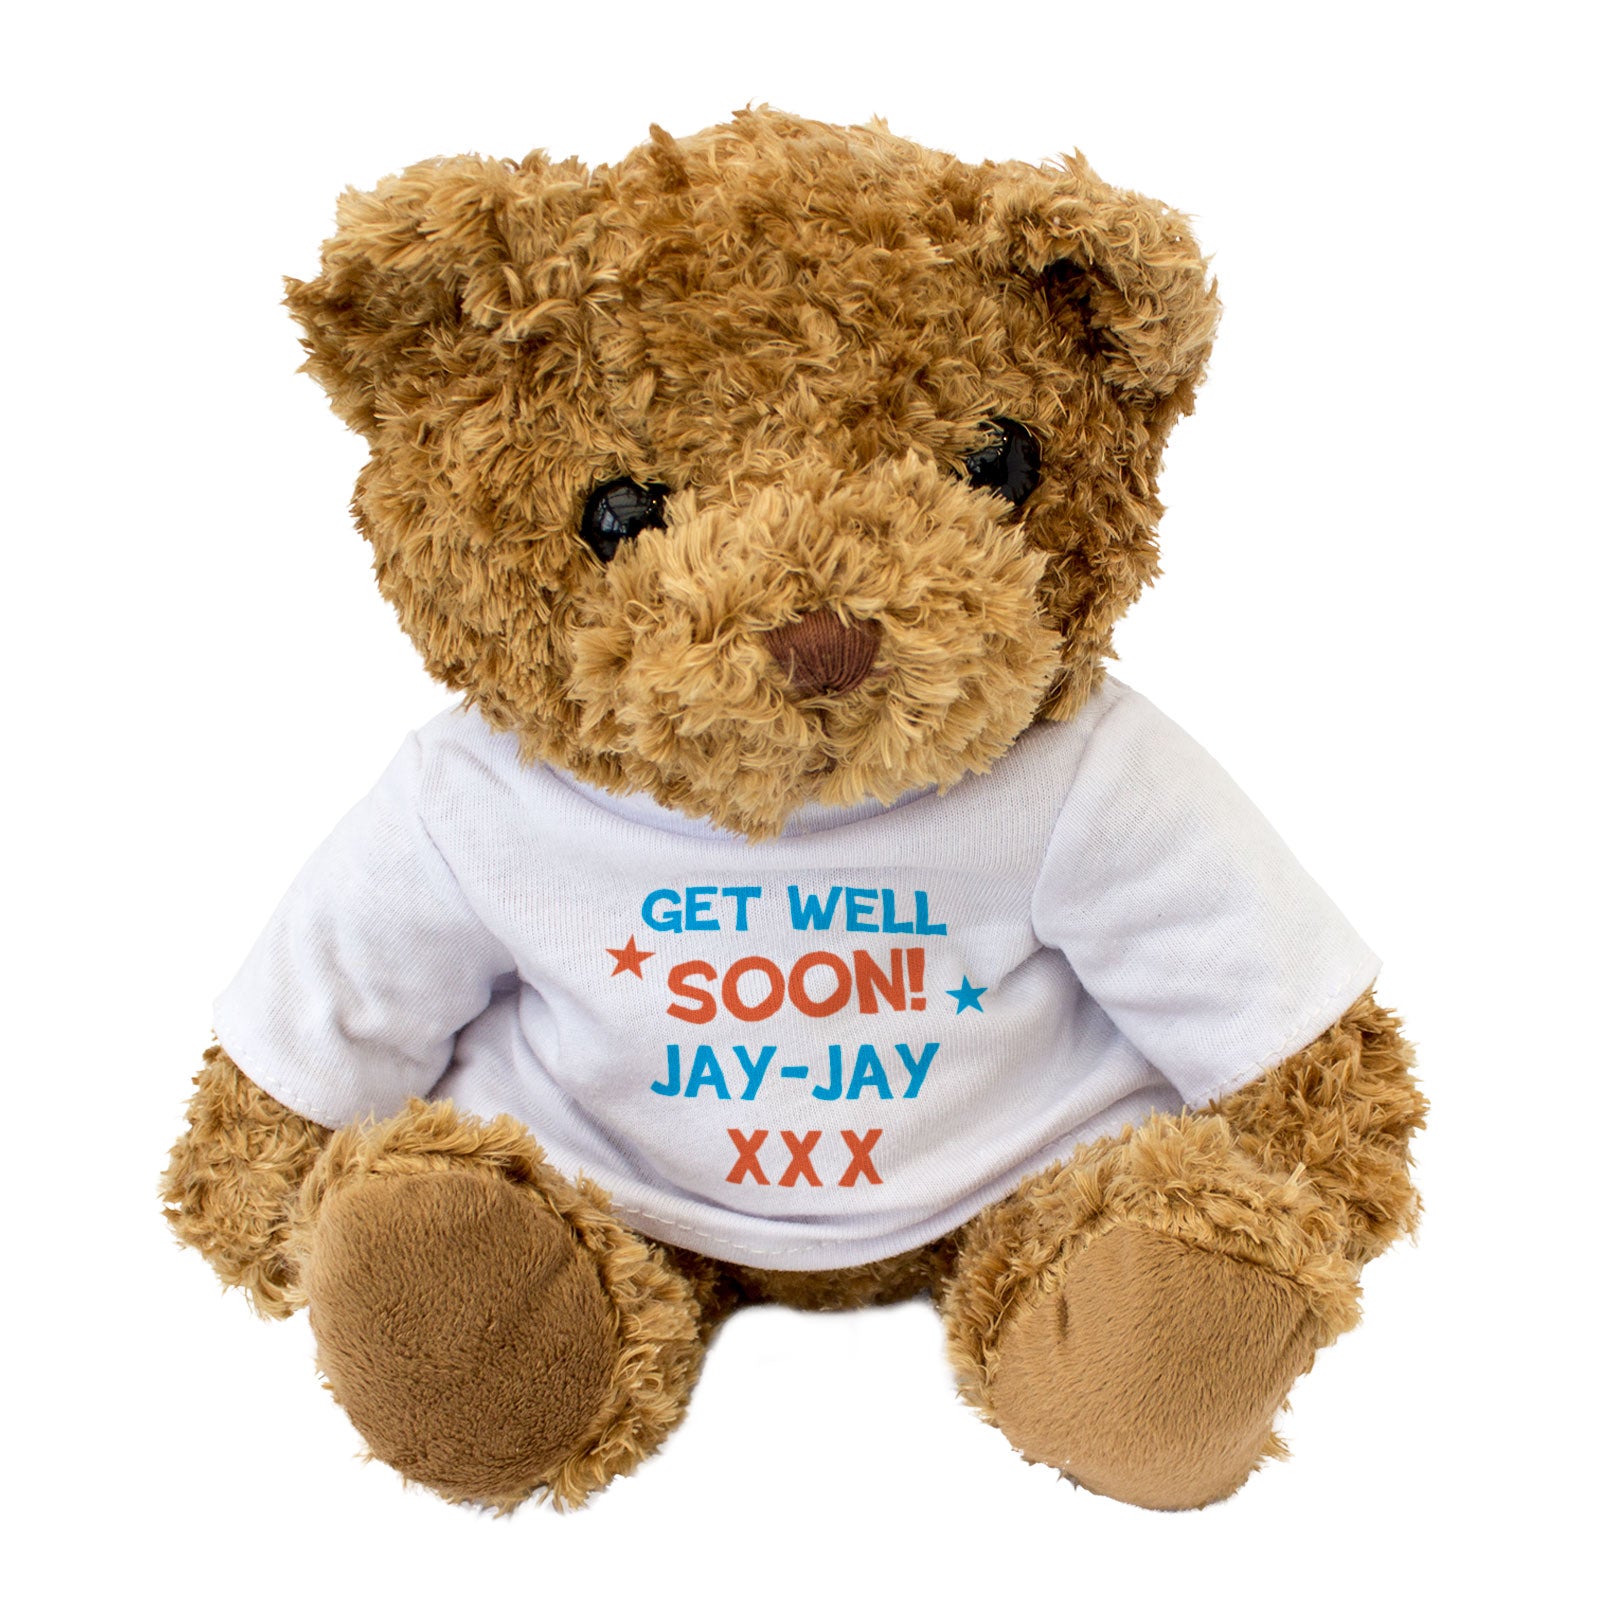 Get Well Soon Jay-Jay - Teddy Bear